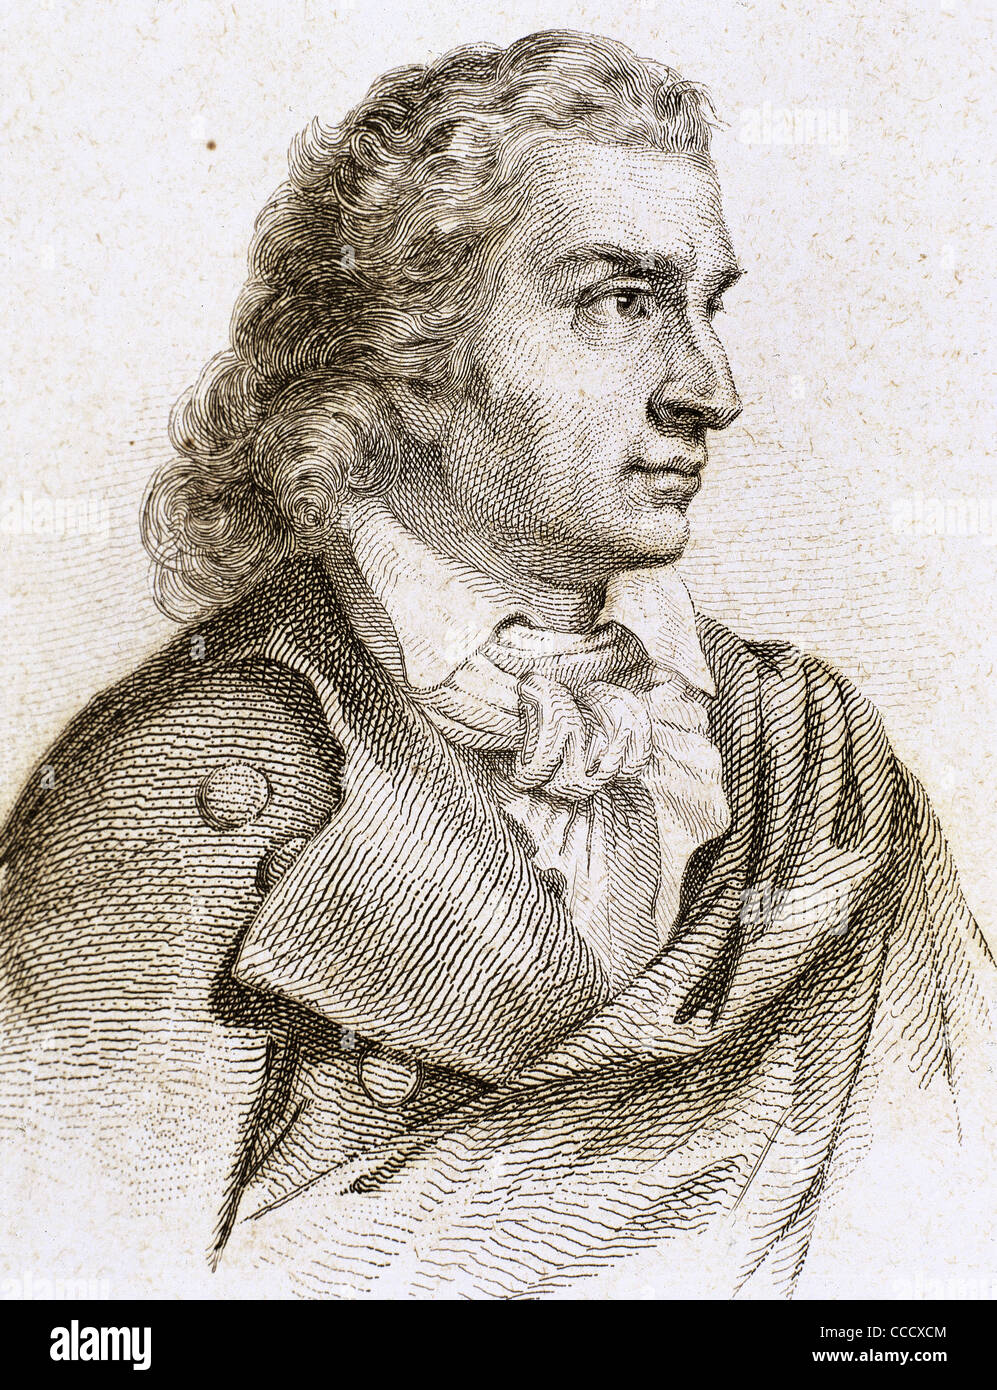 Friedrich Schiller (1759-1805). Deutscher Dichter, Philosoph, Historiker und Dramatiker. Gravur. Stockfoto